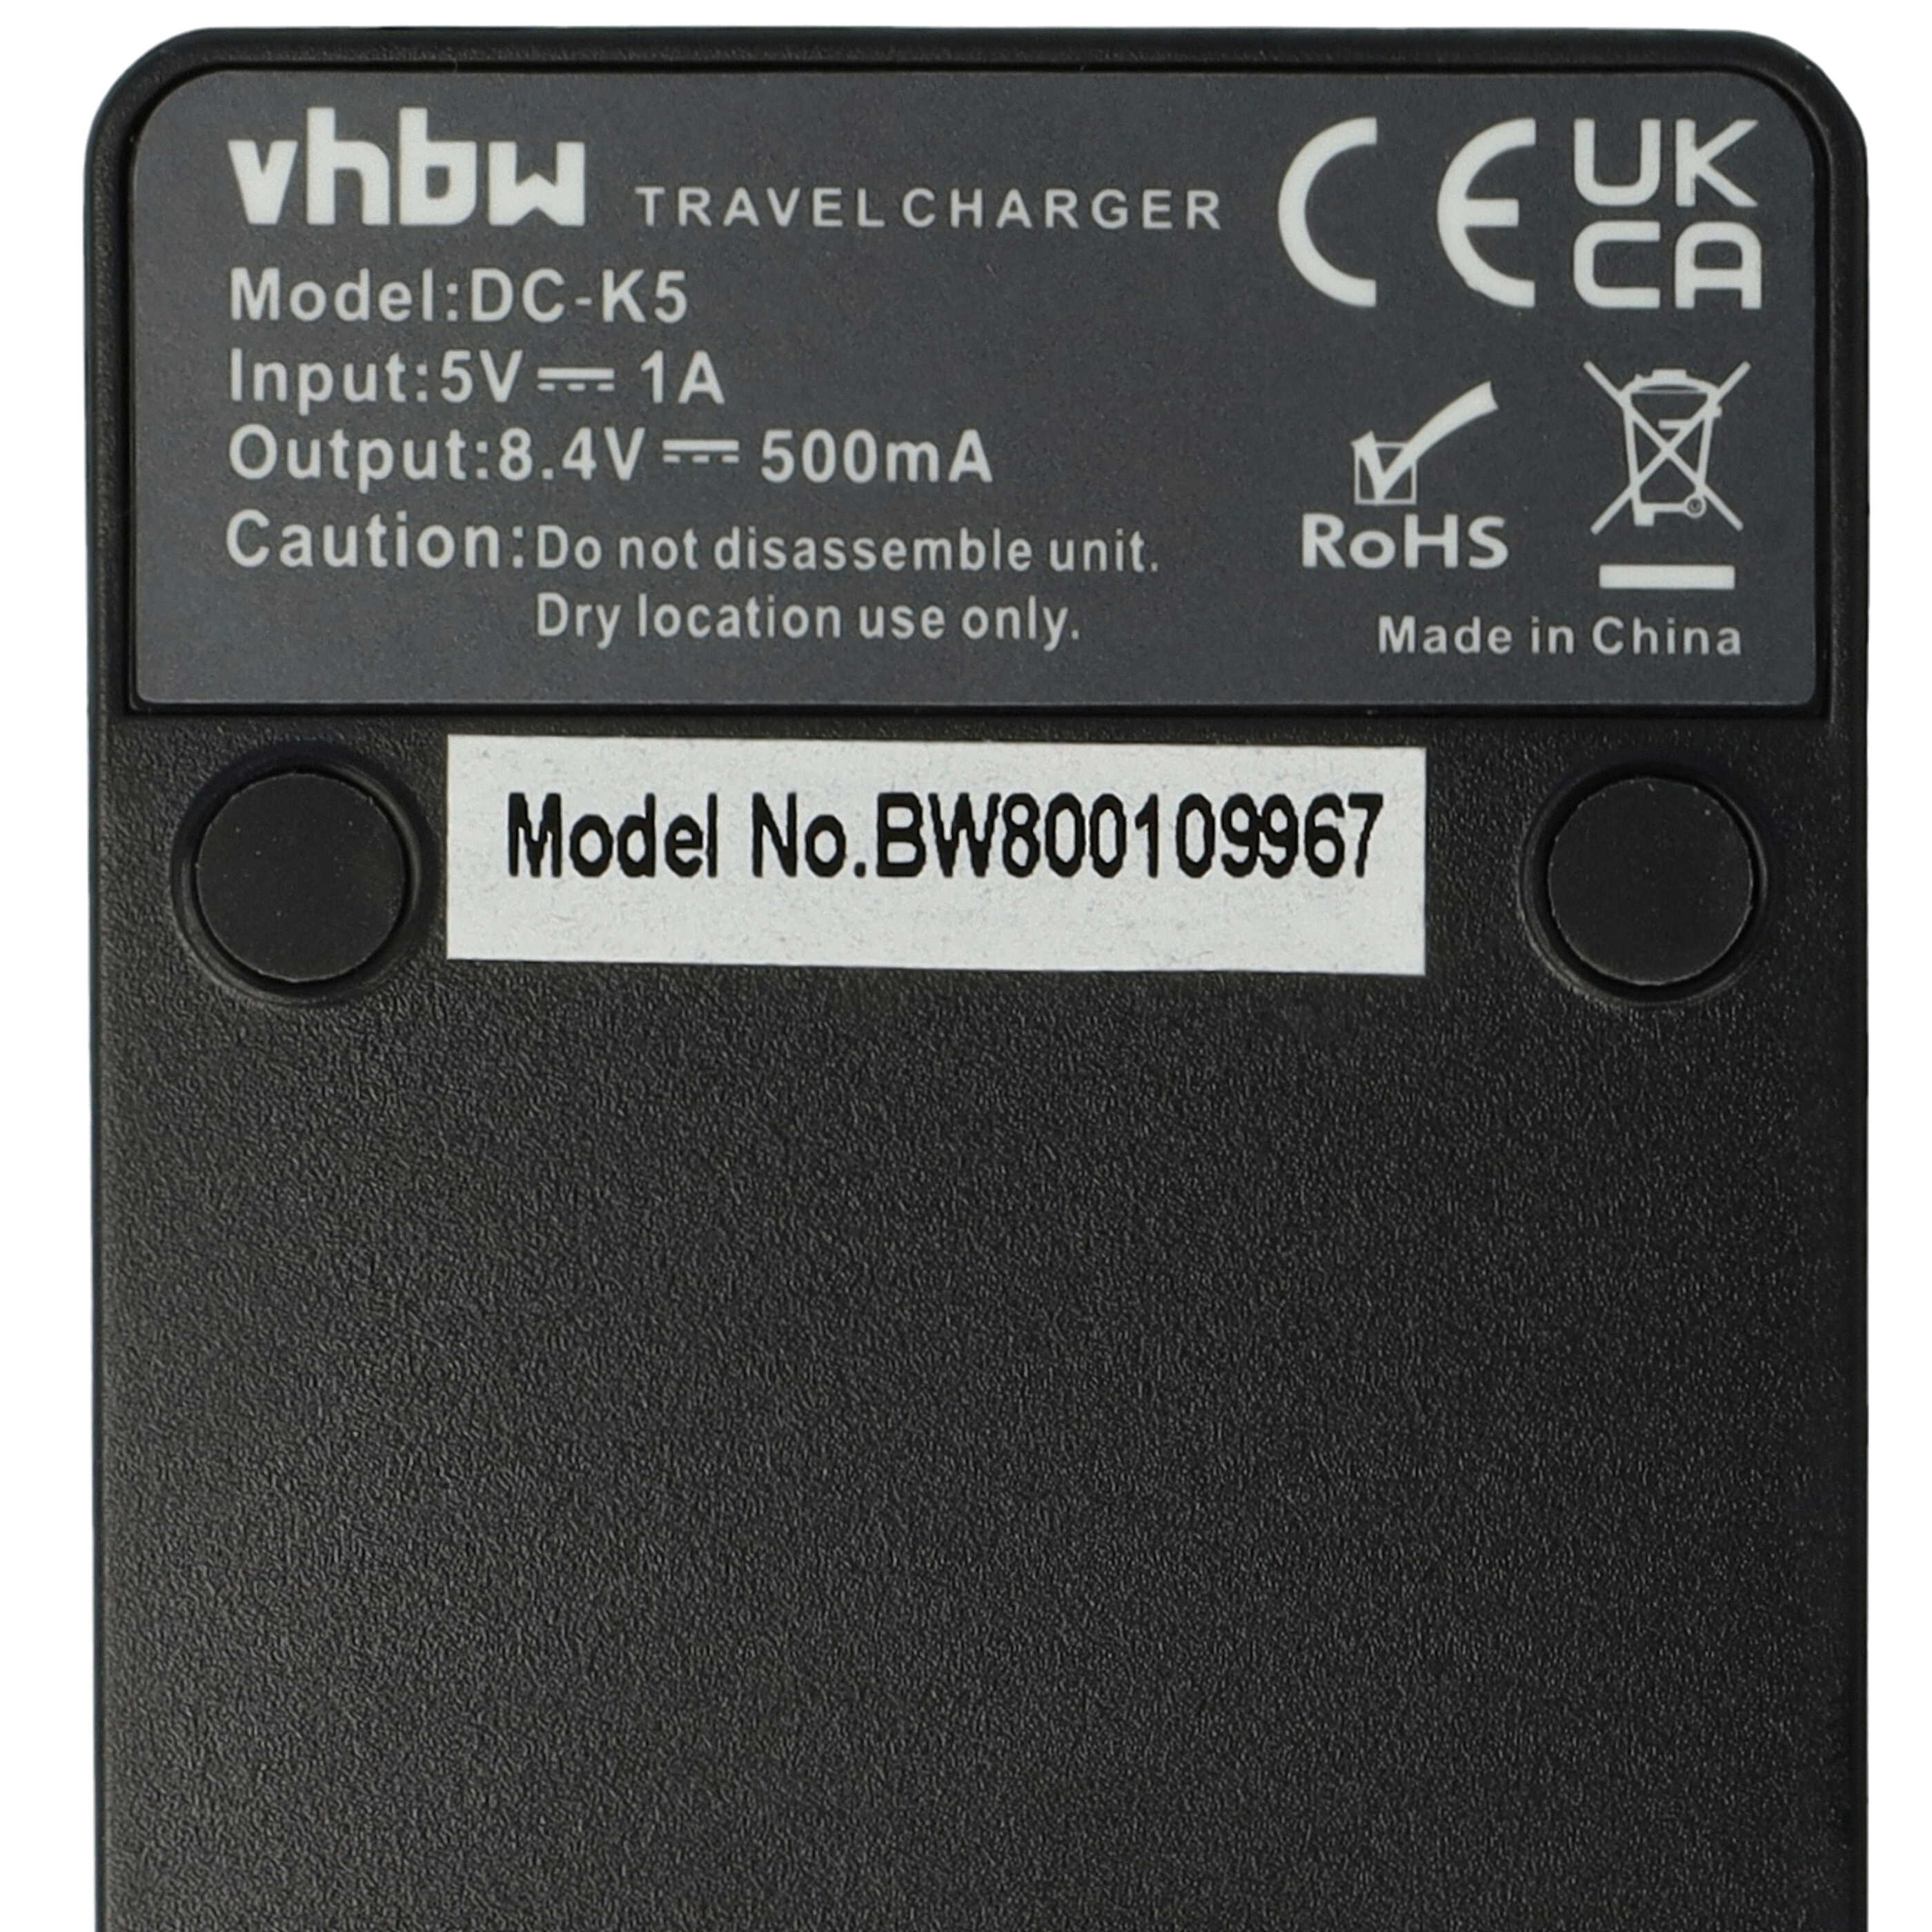 Battery Charger suitable for Nikon EN-EL21 Camera etc. - 0.5 A, 8.4 V